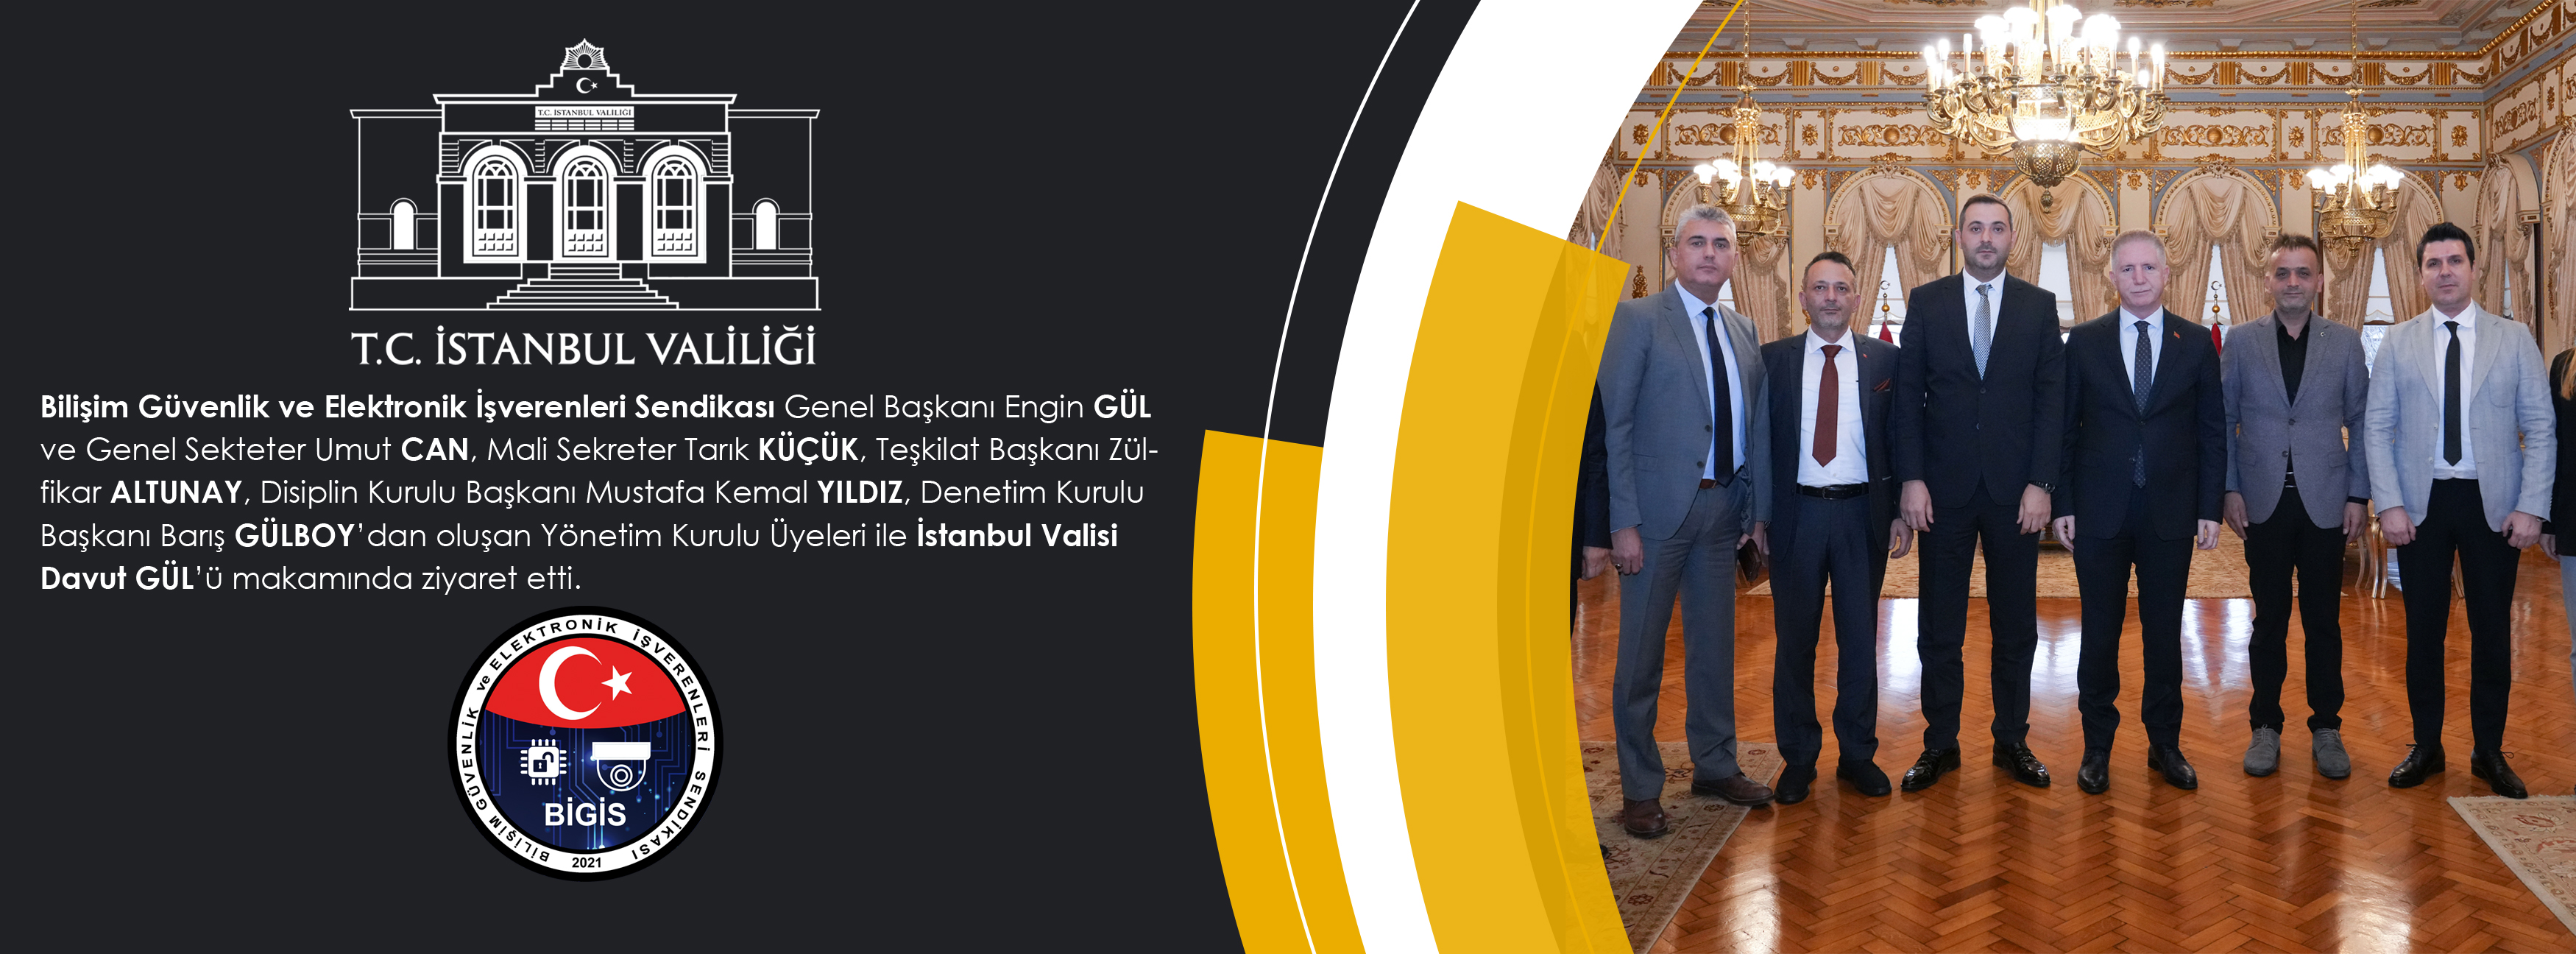 BİGİS Yönetim Kurulu  İstanbul Valisi Davut Gül'ü Makamında Ziyaret Etti